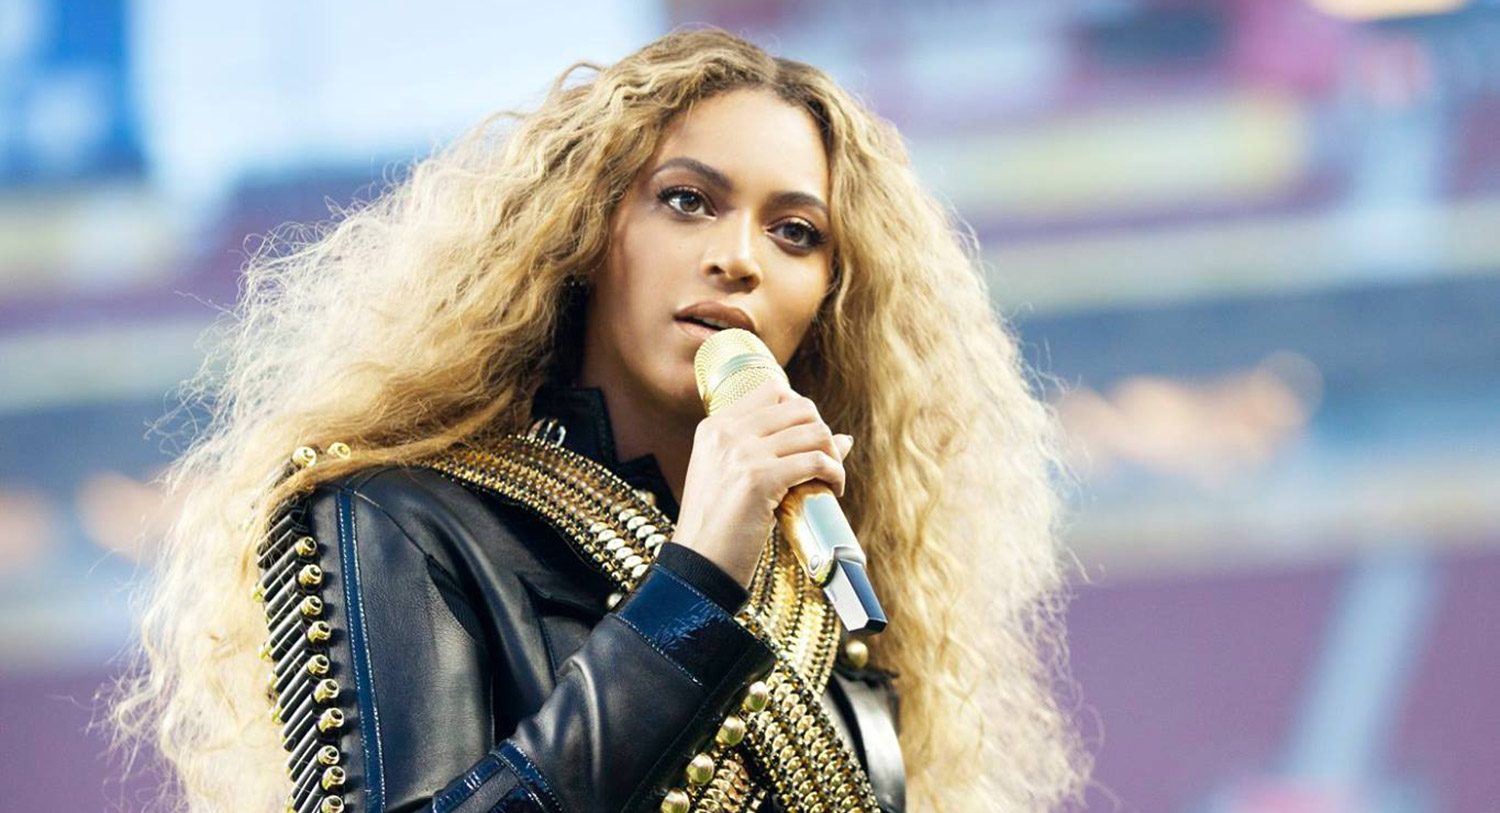 El impactante video de Black Lives Matter con Beyoncé, Rihanna, Pharrell y otros Artistas